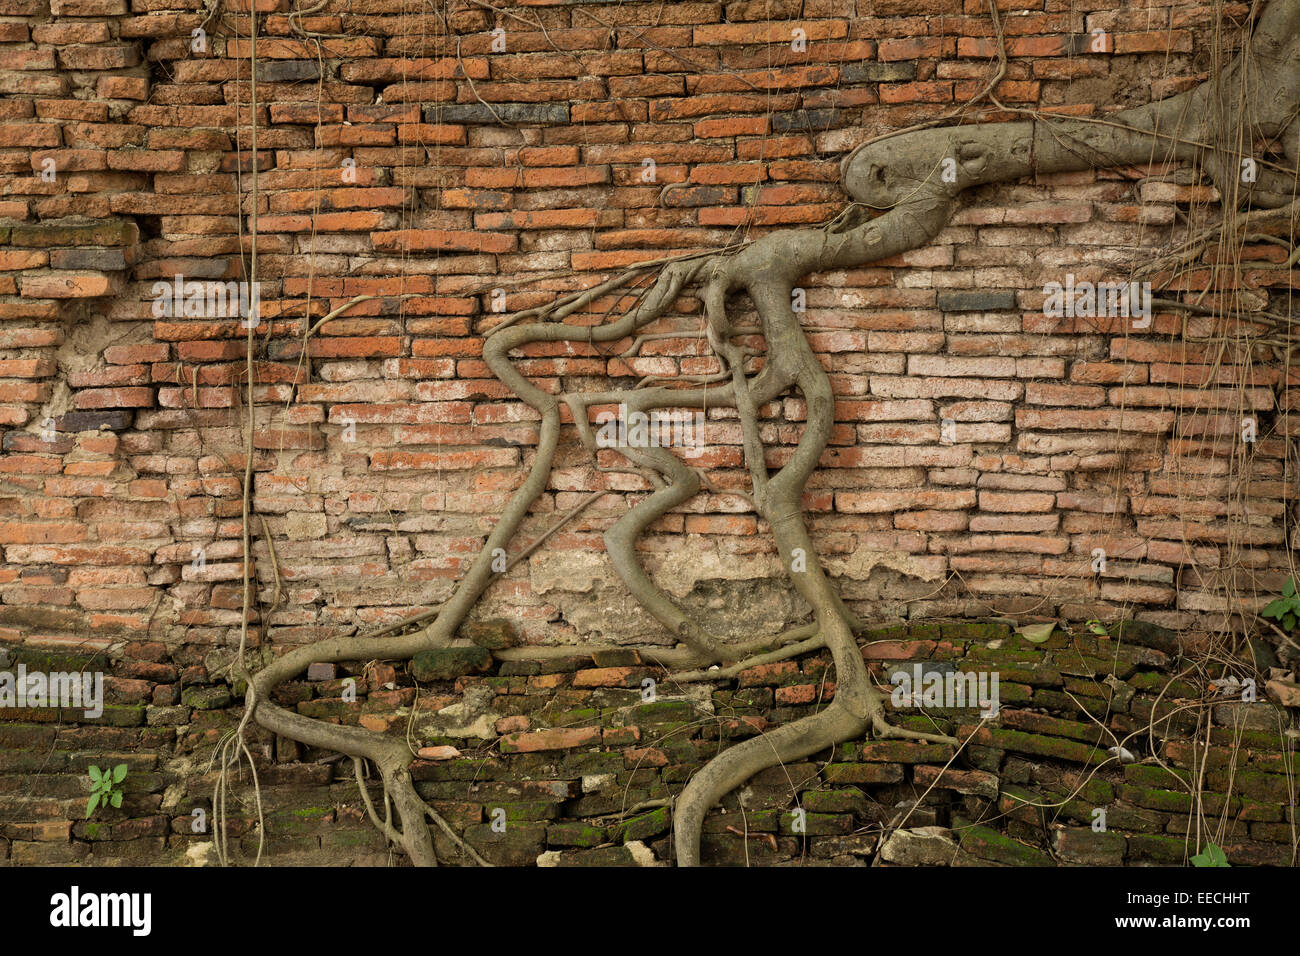 TH00272-00...THAILANDIA - radici di albero in un antico muro di mattoni di Wat Phra Mahathat in Ayutthaya parco storico. Foto Stock